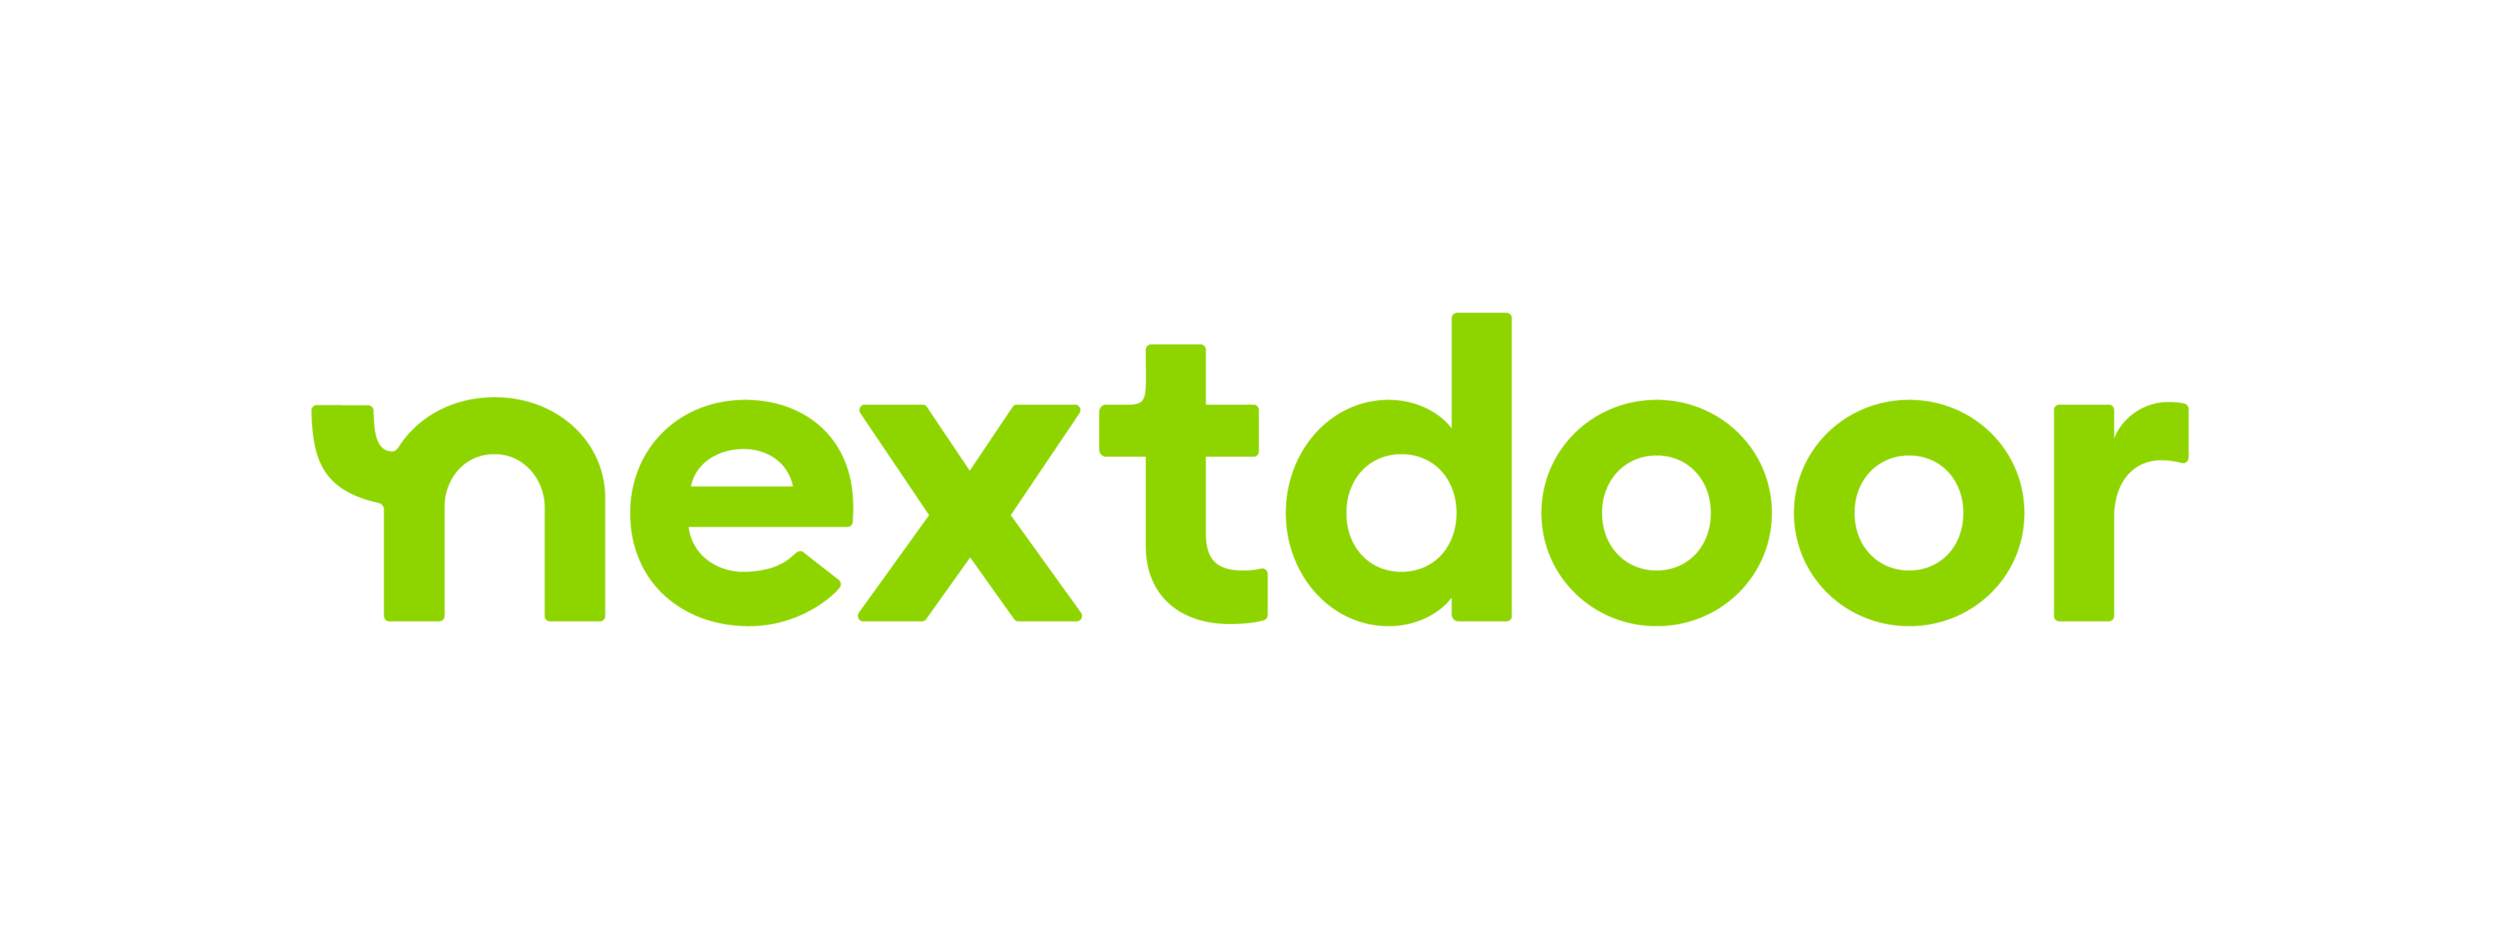 NextdoorLogo_Lime.png